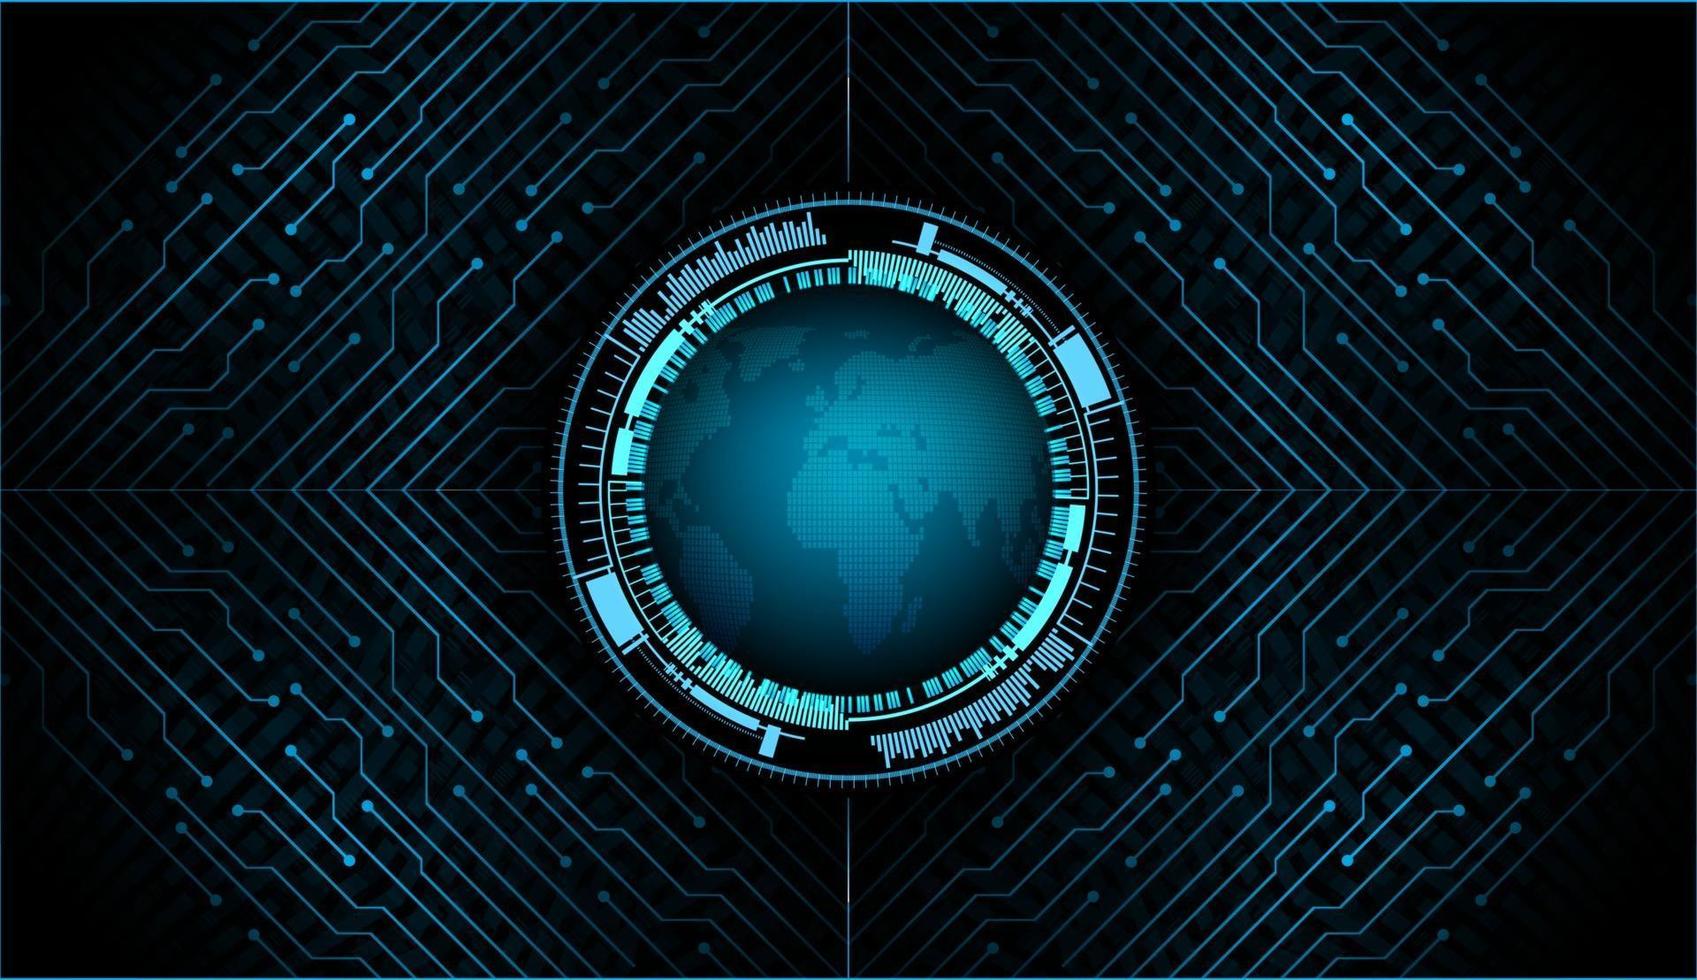 Technologie future du circuit imprimé binaire mondial, fond de concept de cybersécurité hud bleu vecteur